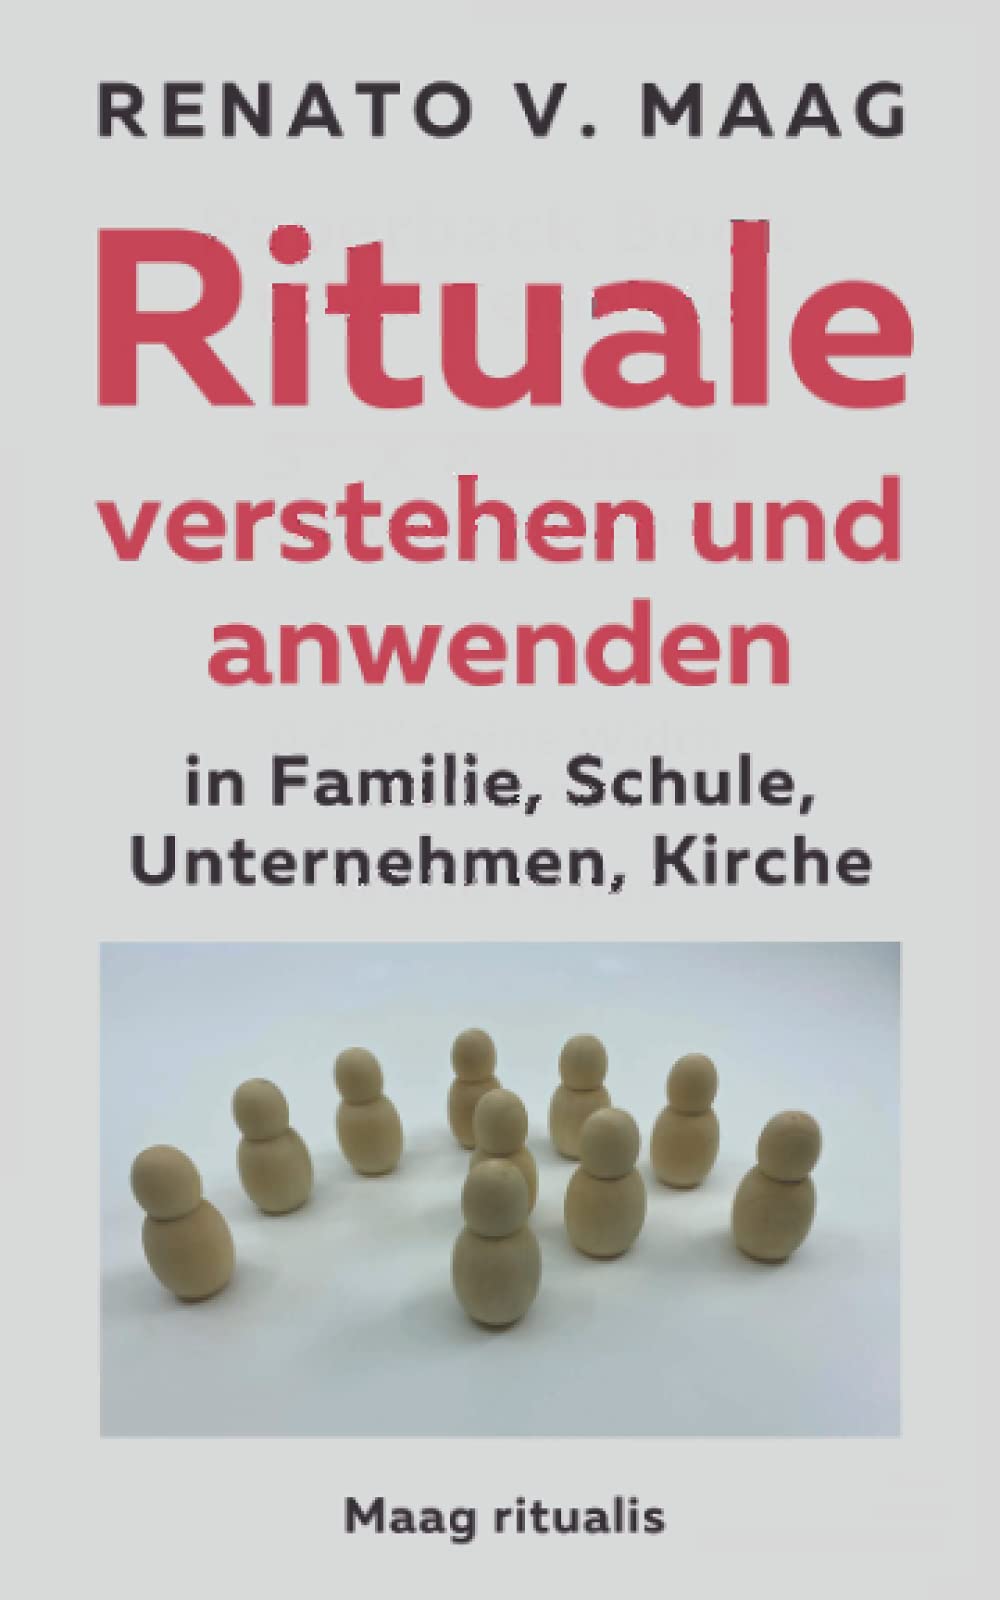 Renato V. Maag: Rituale verstehen und anwenden in Familie, Schule, Unternehmen, Kirche